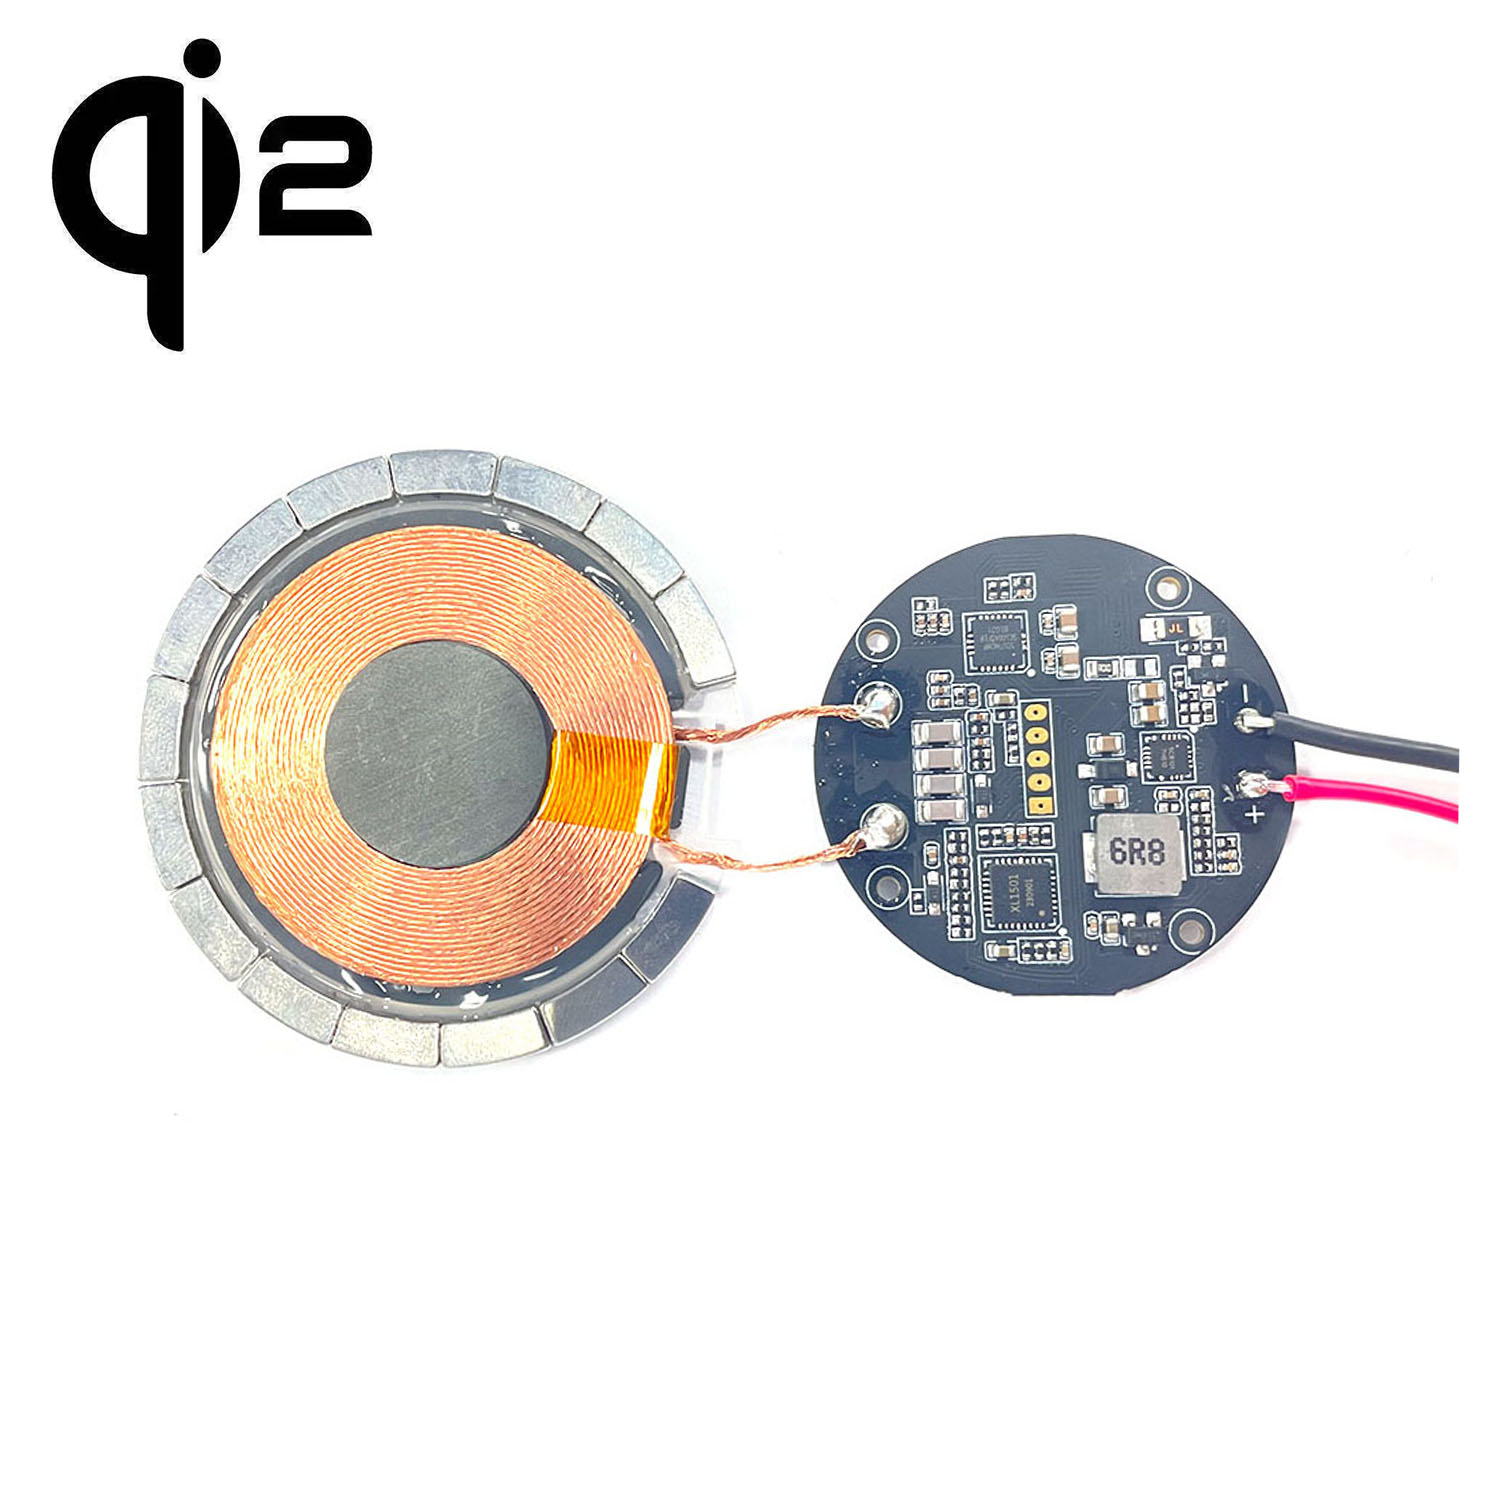 qi2 MPP module de charge magnétique rapide sans fil magnétique émetteur récepteur 15w rapide Qi2 QI MPP deux modules de chargeur magnétique sans fil personnalisation